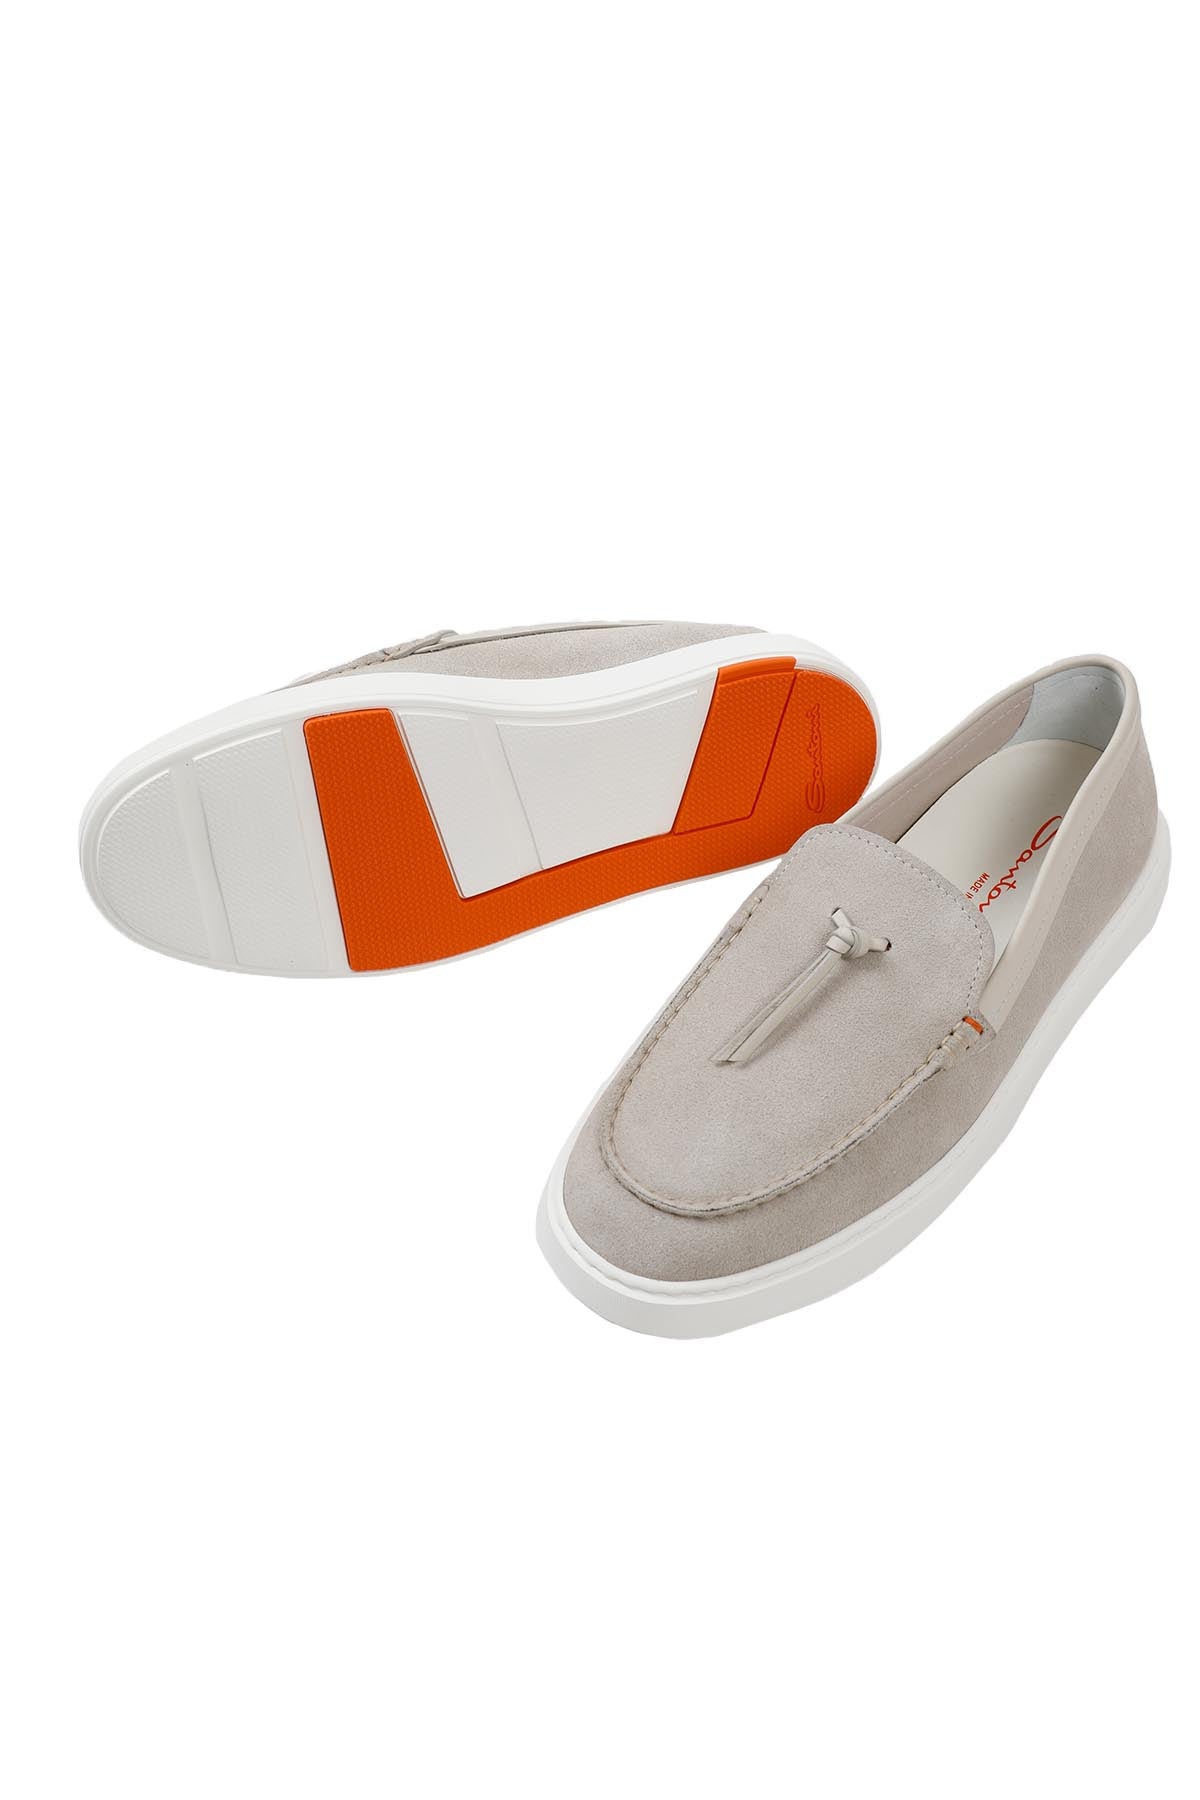 Santoni Nubuk Püsküllü Deri Loafer Ayakkabı-Libas Trendy Fashion Store